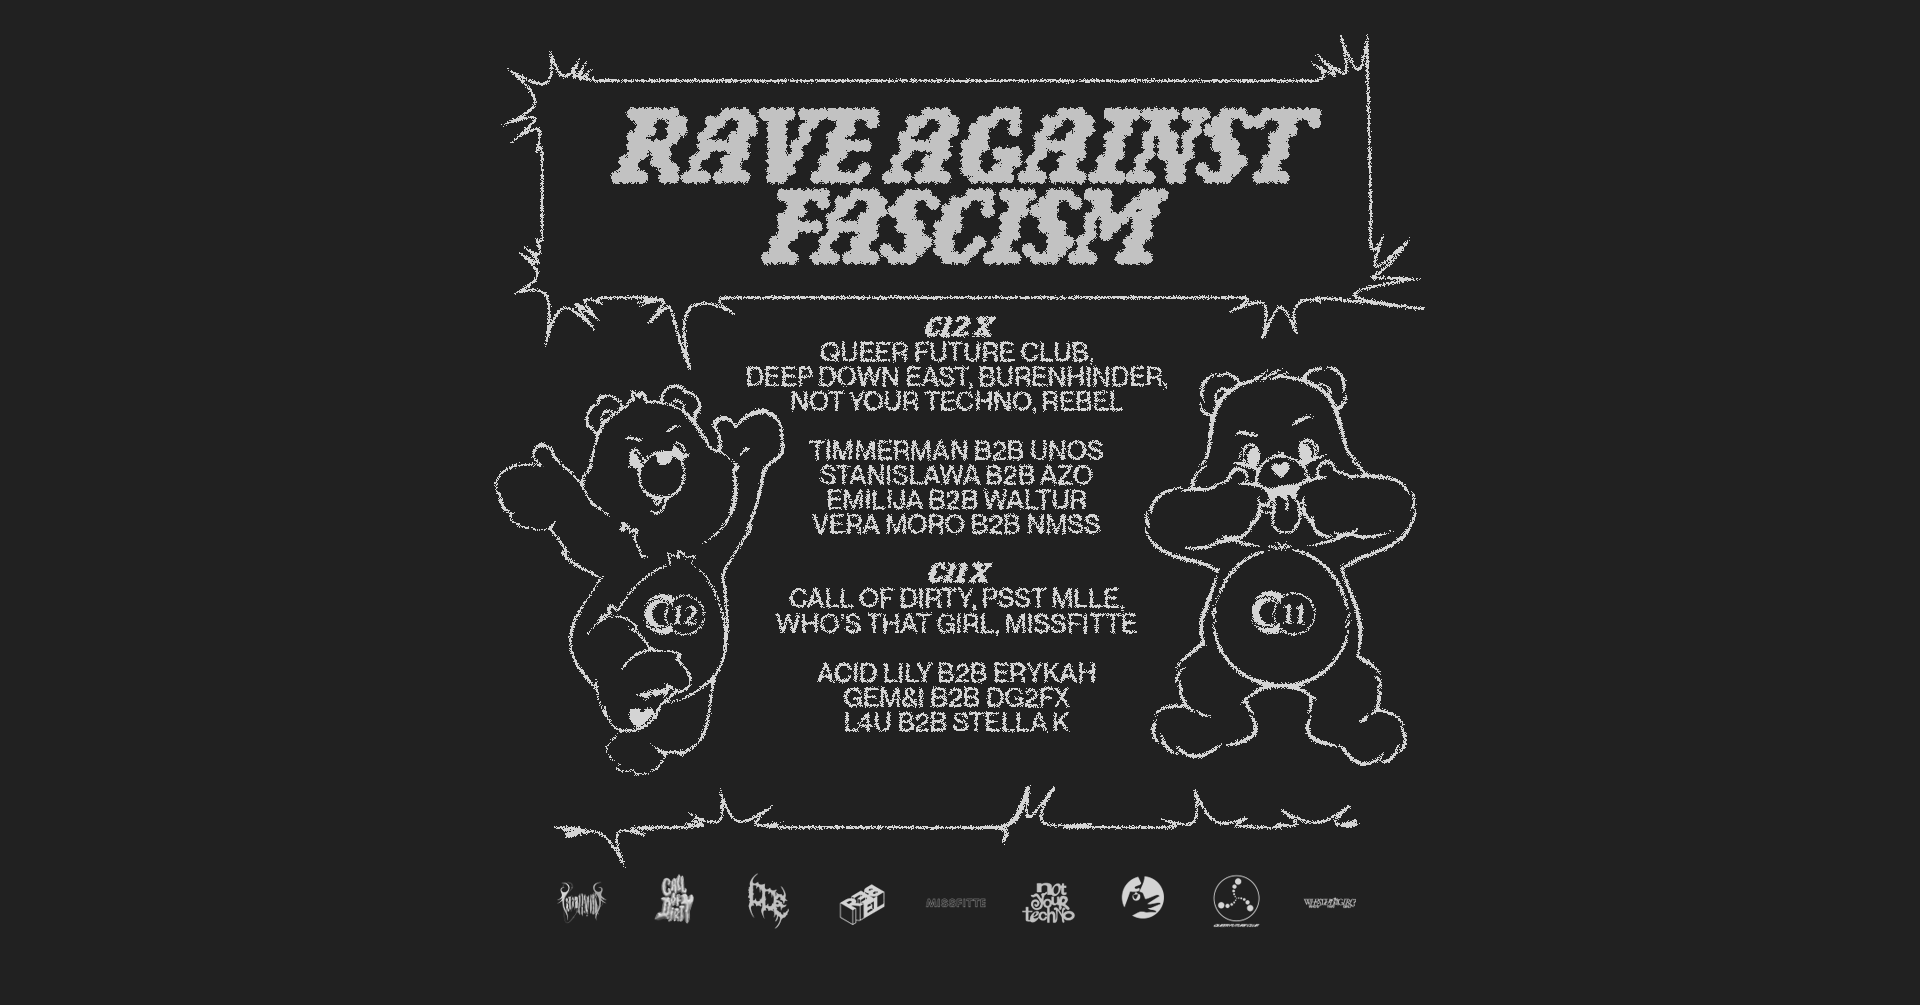 Promo  van Rave Against Fascism, in opdracht van C12